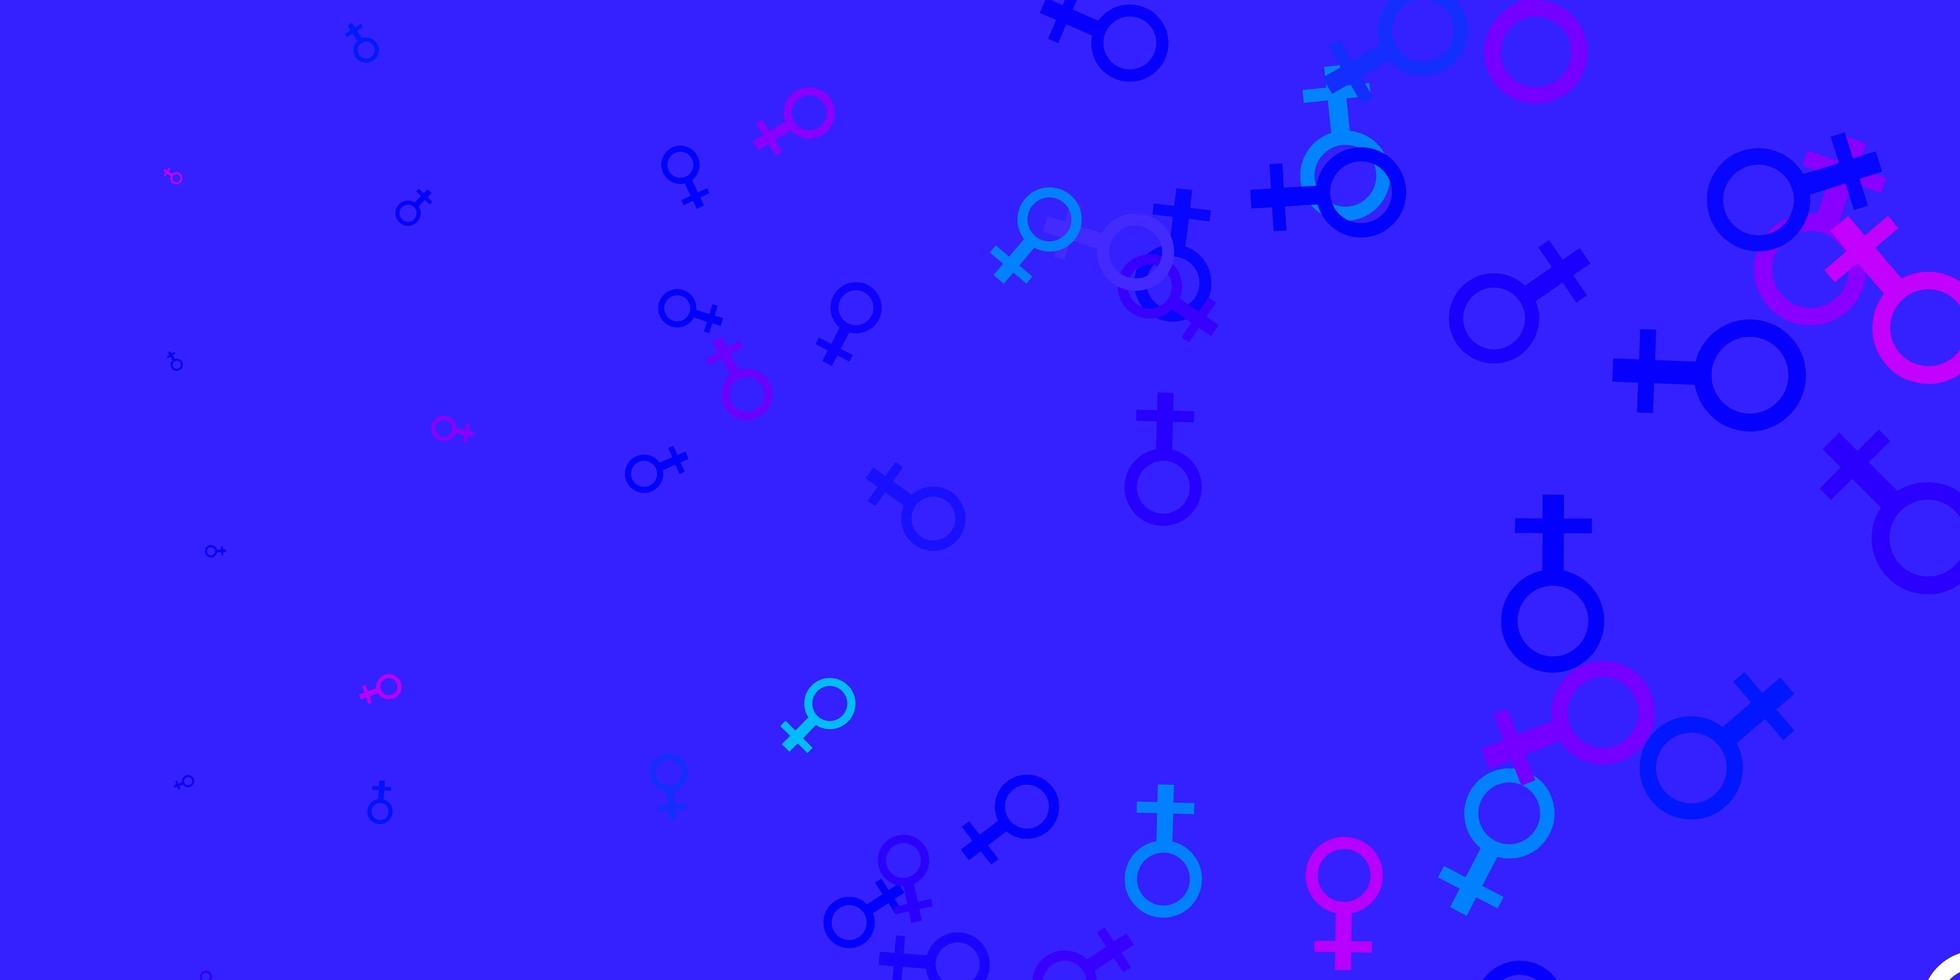 motivo vettoriale blu rosa chiaro con elementi di femminismo